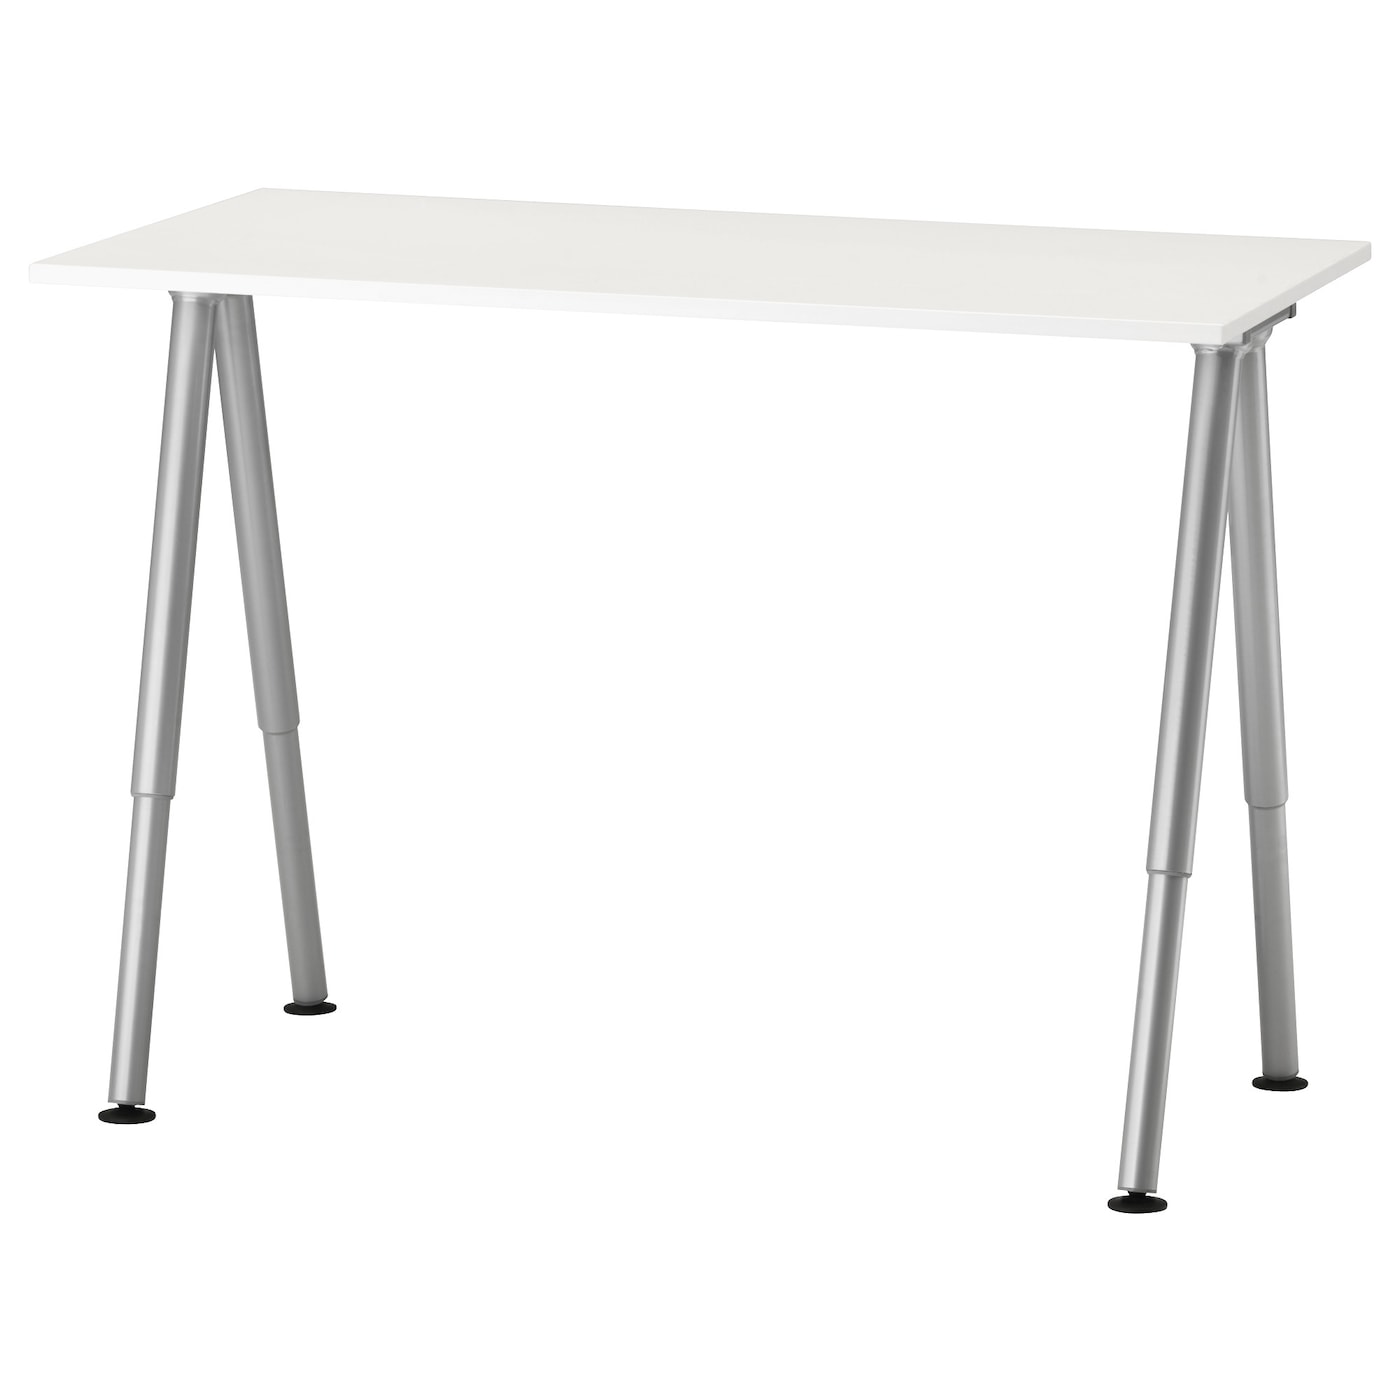 Тиге отзывы. Стол ikea тиге. Письменный стол Thyge тиге белый/серебристый 120x60 см. Стол 120x60 икеа белый. Письменный стол тиге икеа.